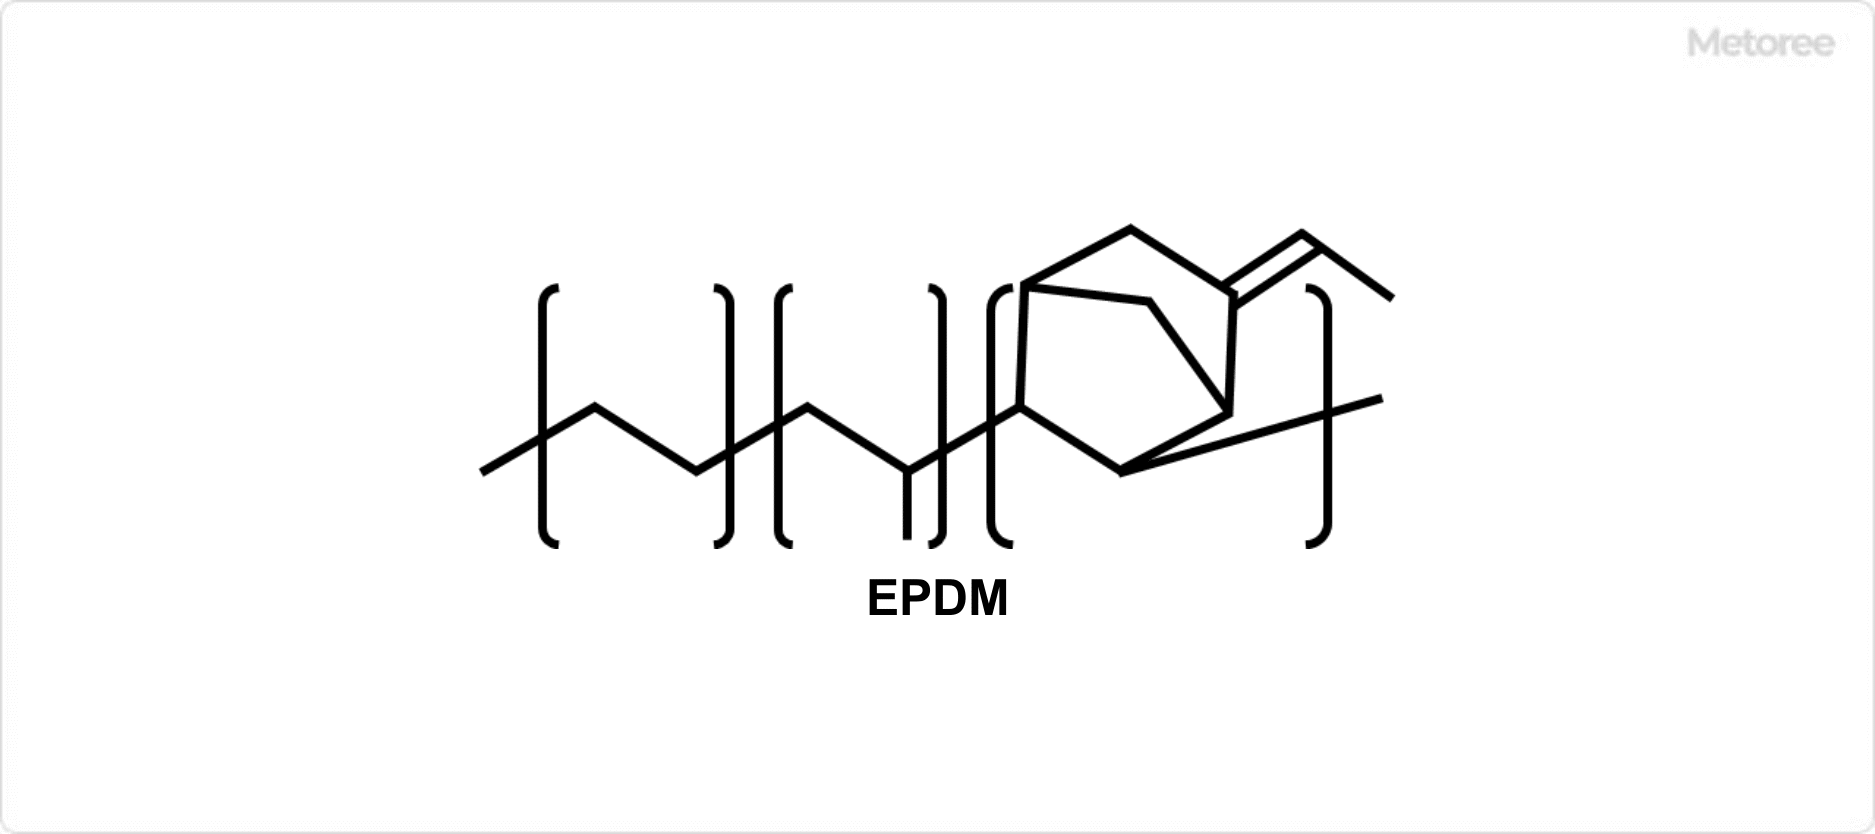 EPDMの構造